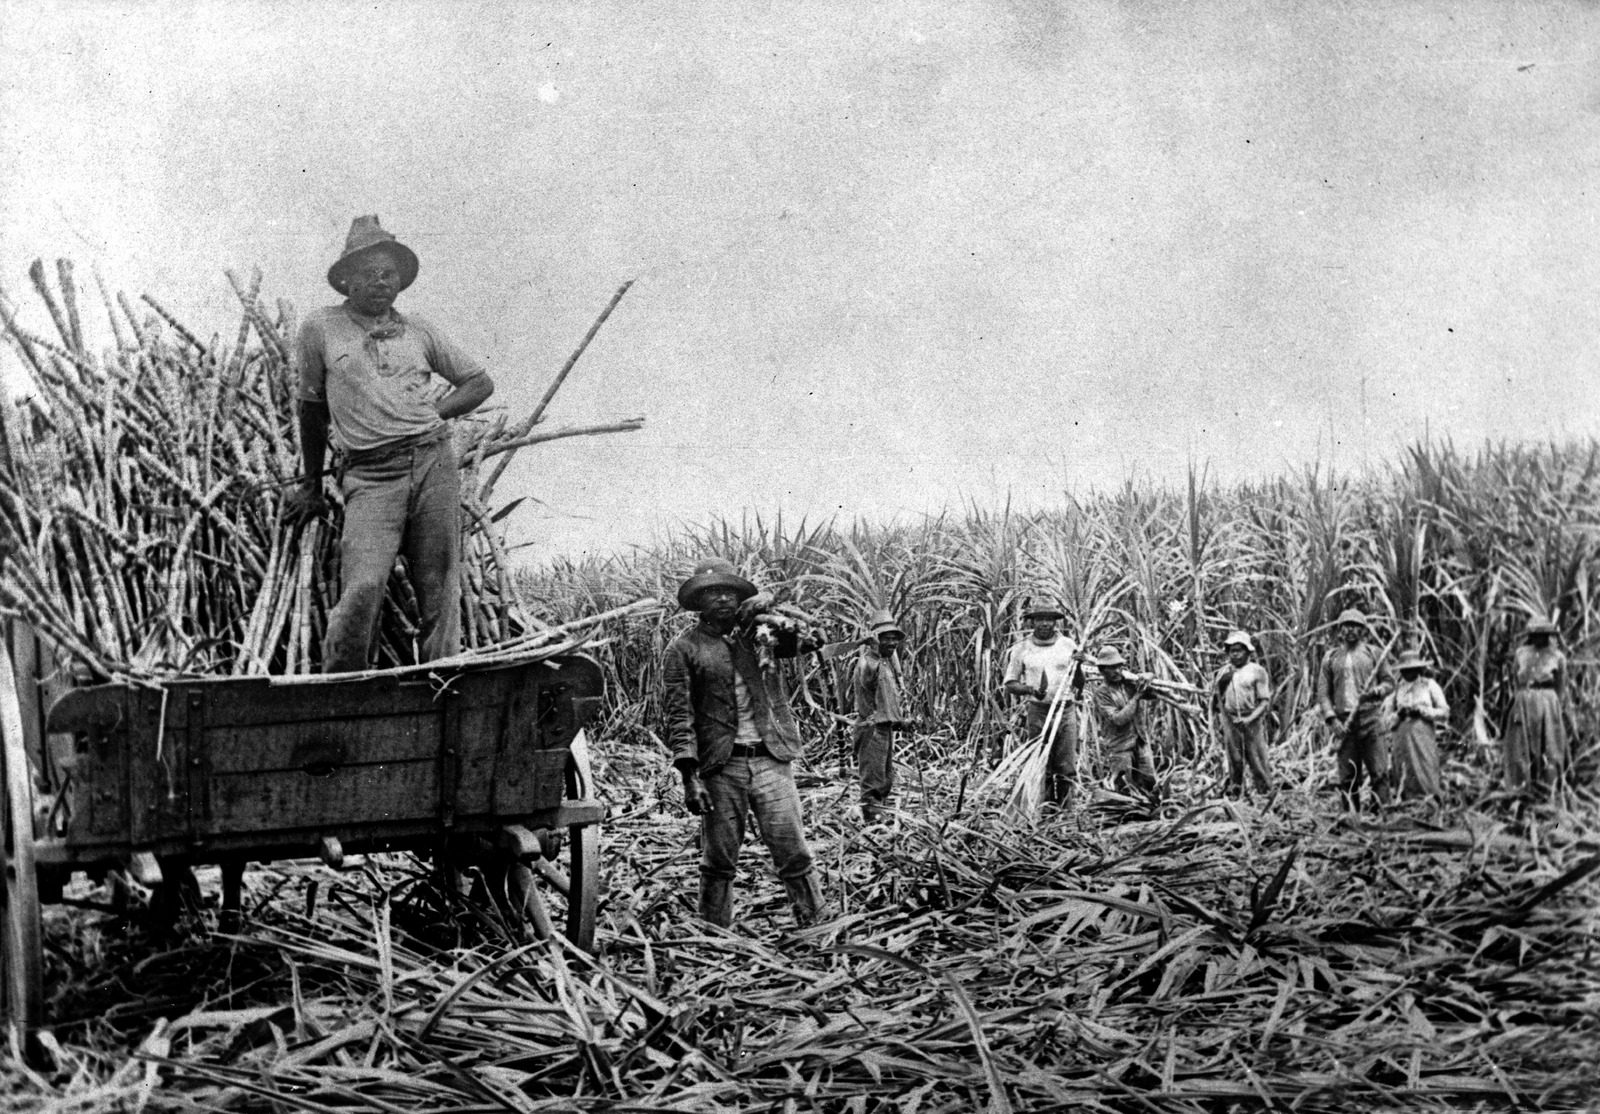 South Sea Islanders working on a sugar cane plantation